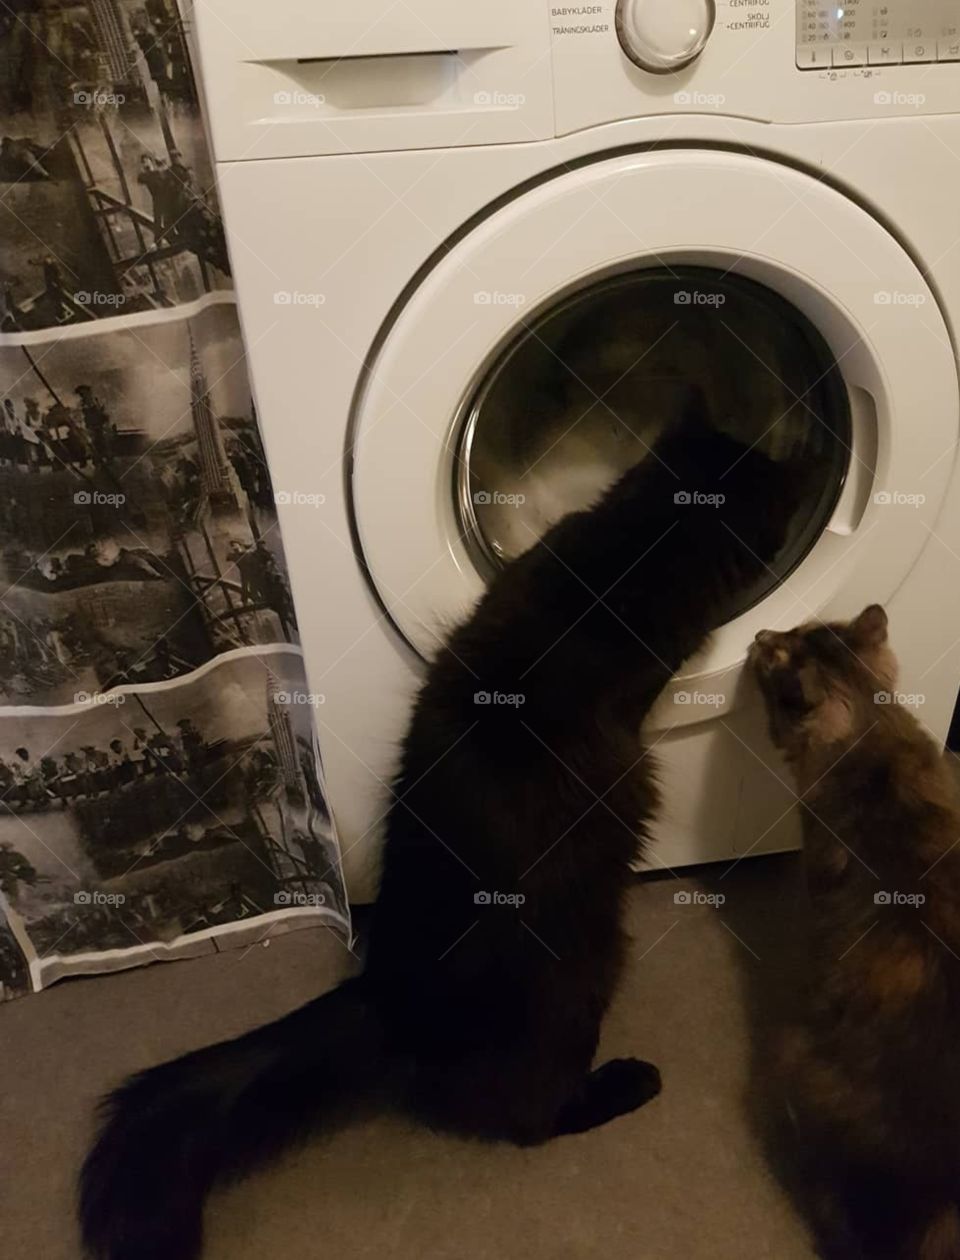 Sällskap ha man alltid av Herculez & Mimmi när man Tvättar i tvättmaskin